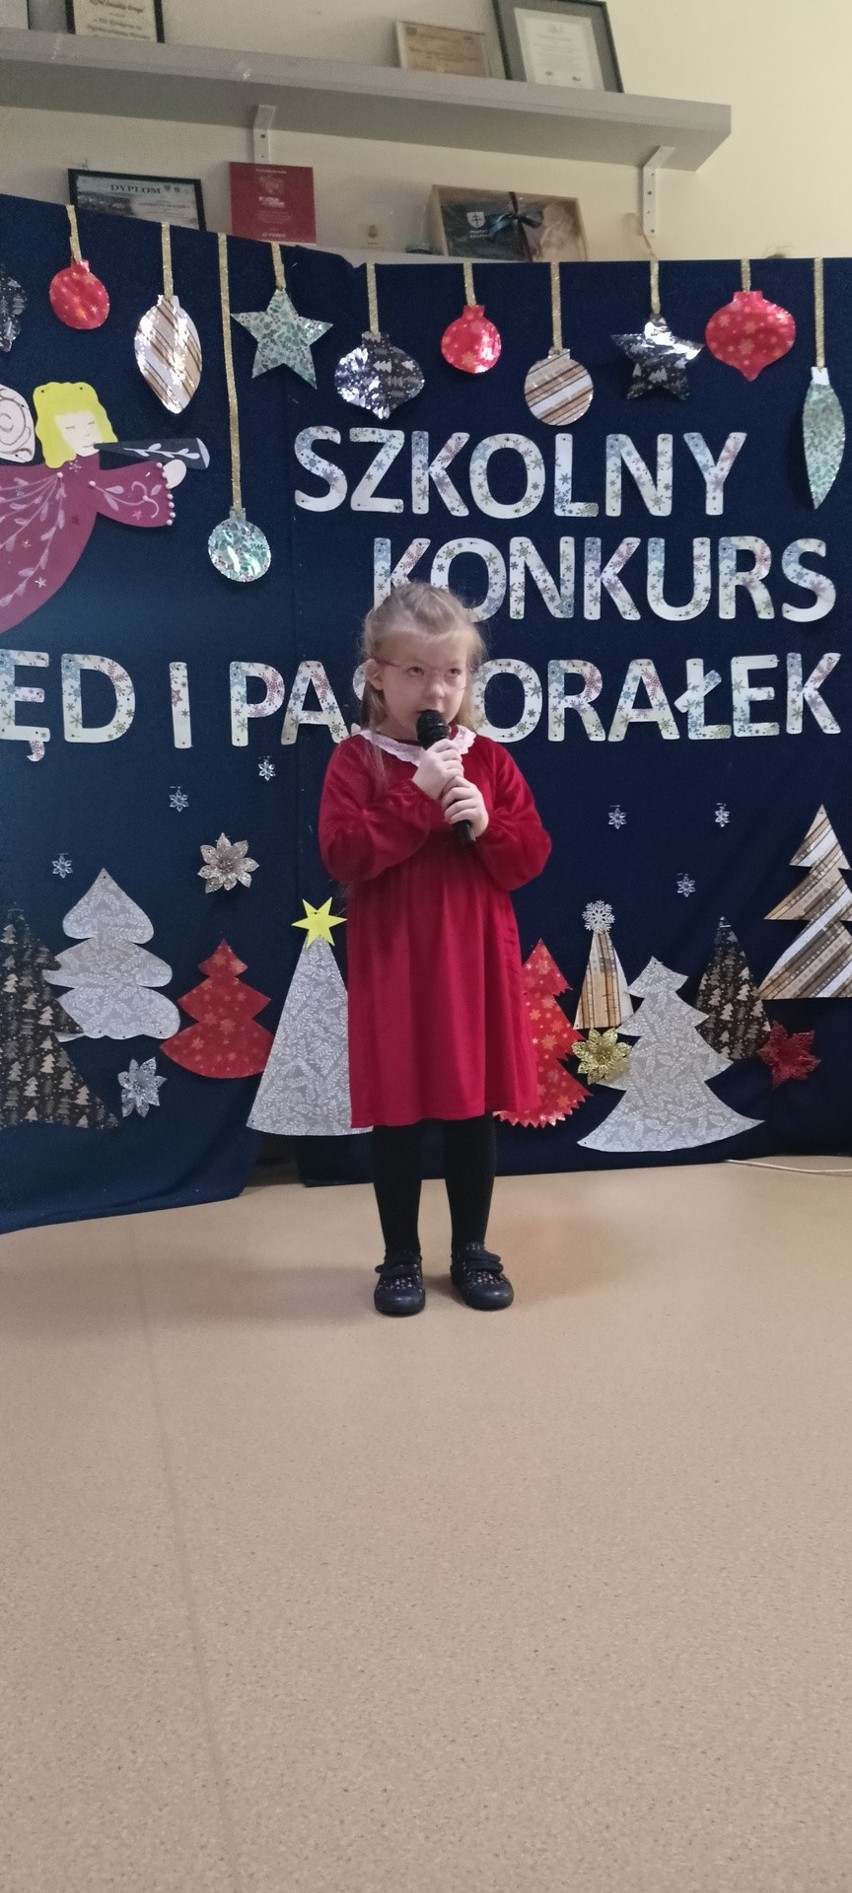 Szkolny Festiwal Kolęd i Pastorałek w Śniadce Drugiej. Dzieci pięknie śpiewały. Zobacz zdjęcia